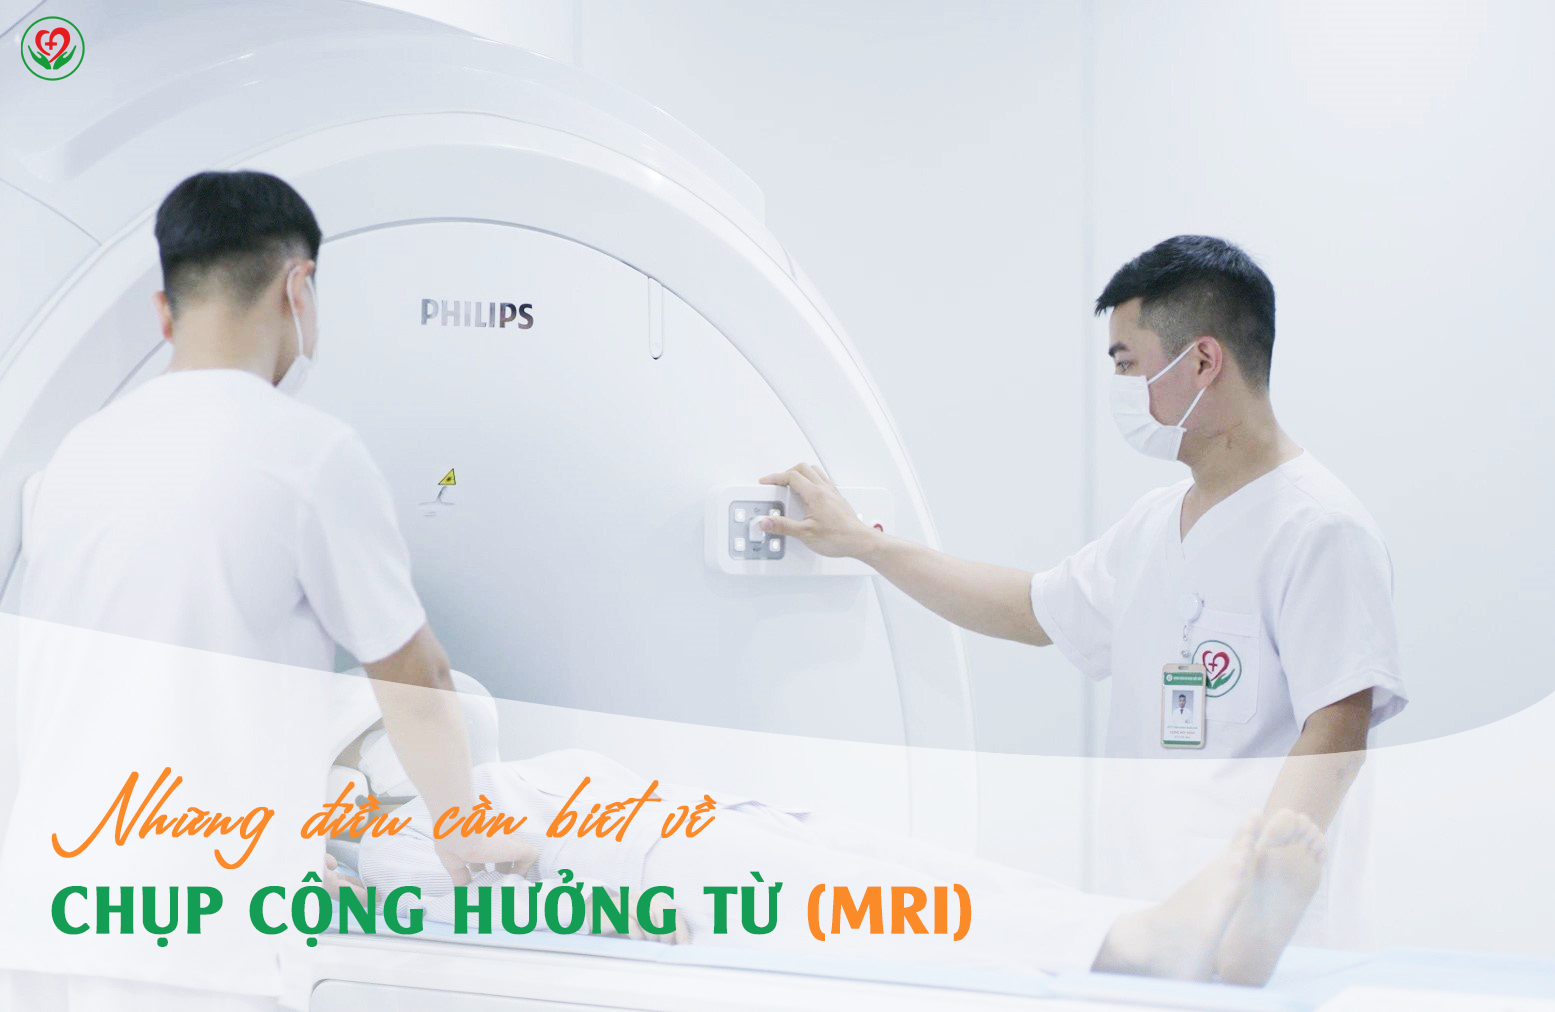 Chụp cộng hưởng từ (MRI) có tác dụng gì?